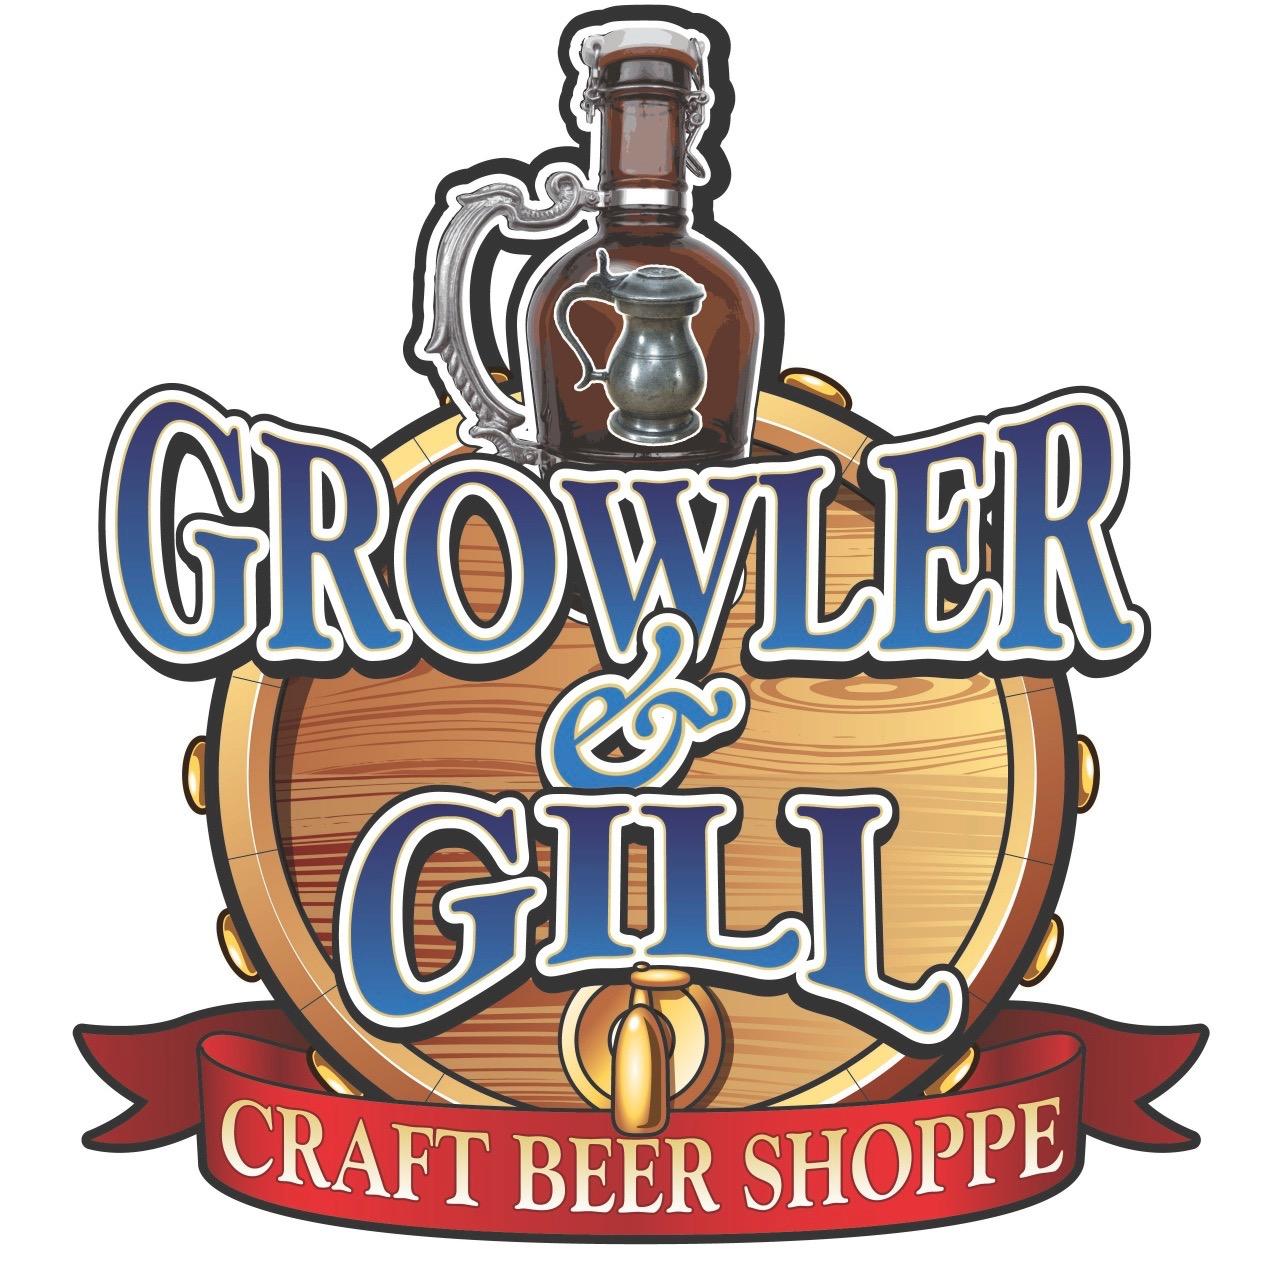 Growler & Gill Craft Beer Bar Coupons near me in Nanuet | 8coupons